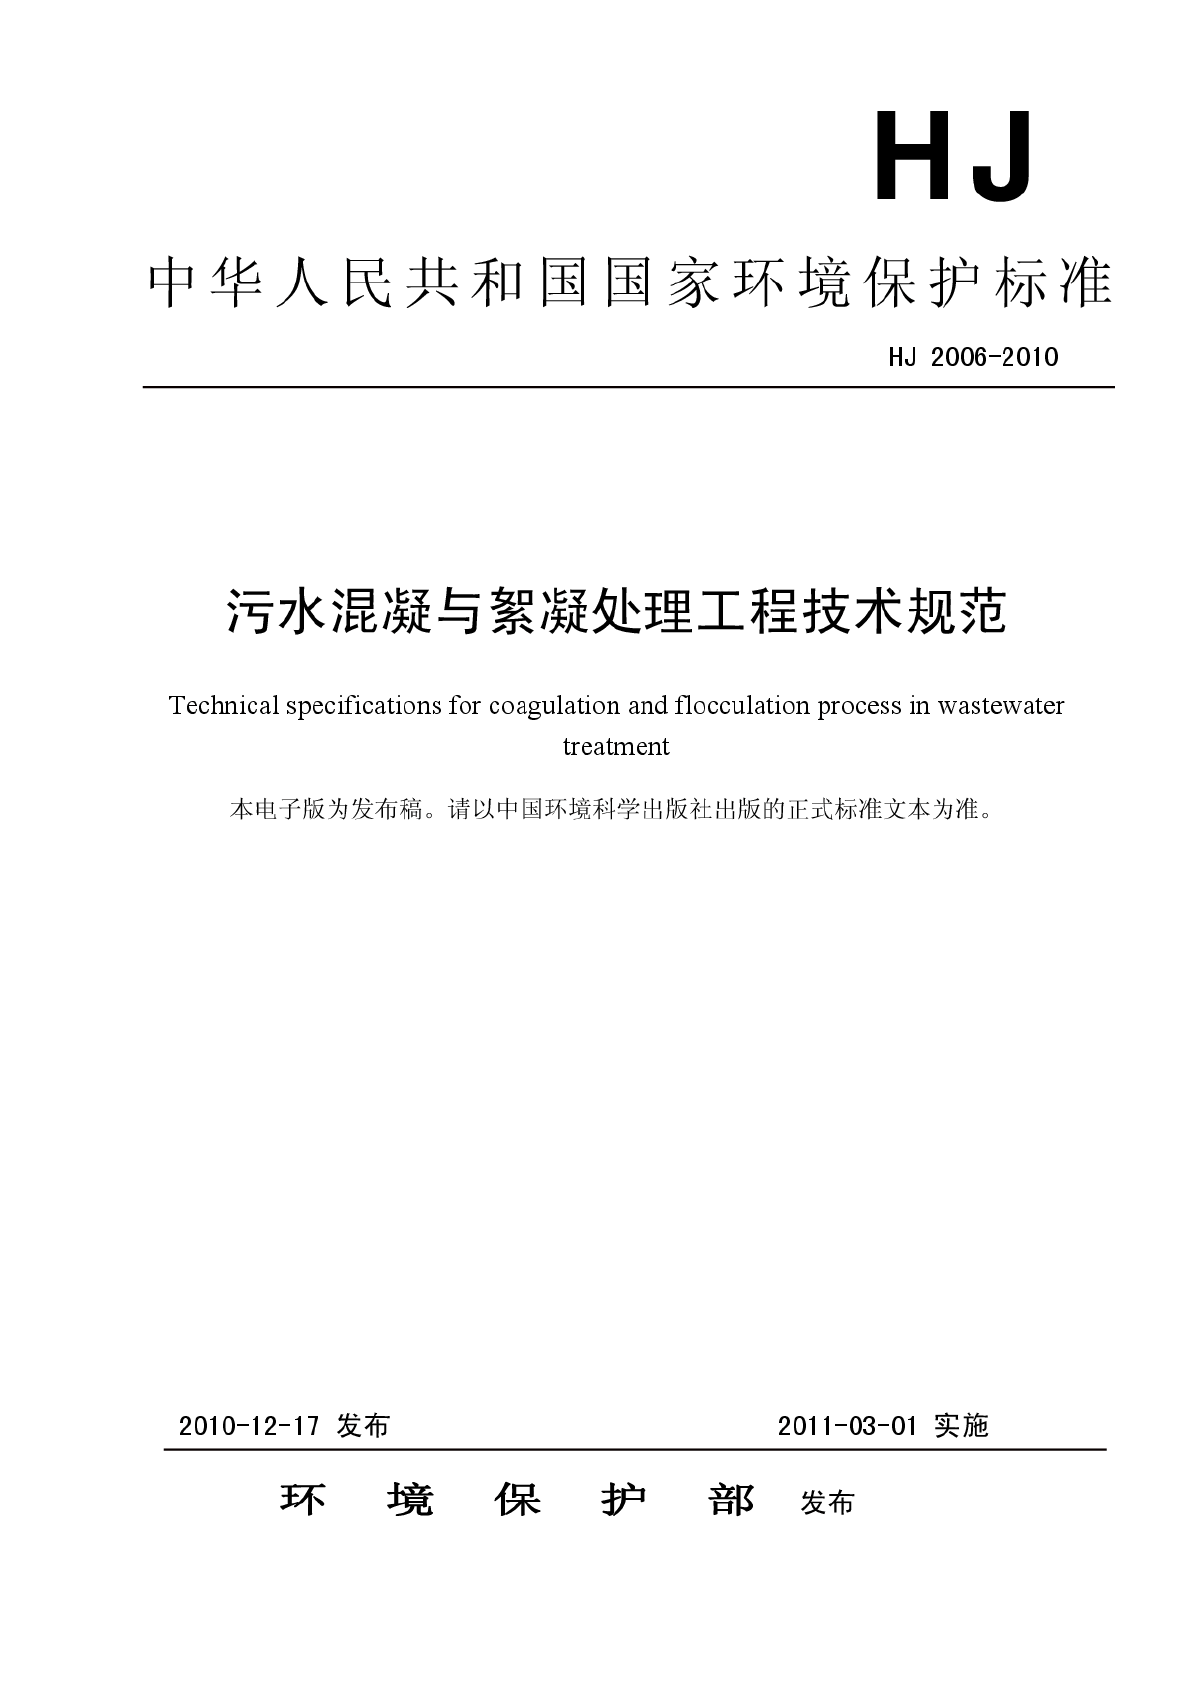 污水溷凝与絮凝处理工程技术规范（HJ+2006-2010）.pdf